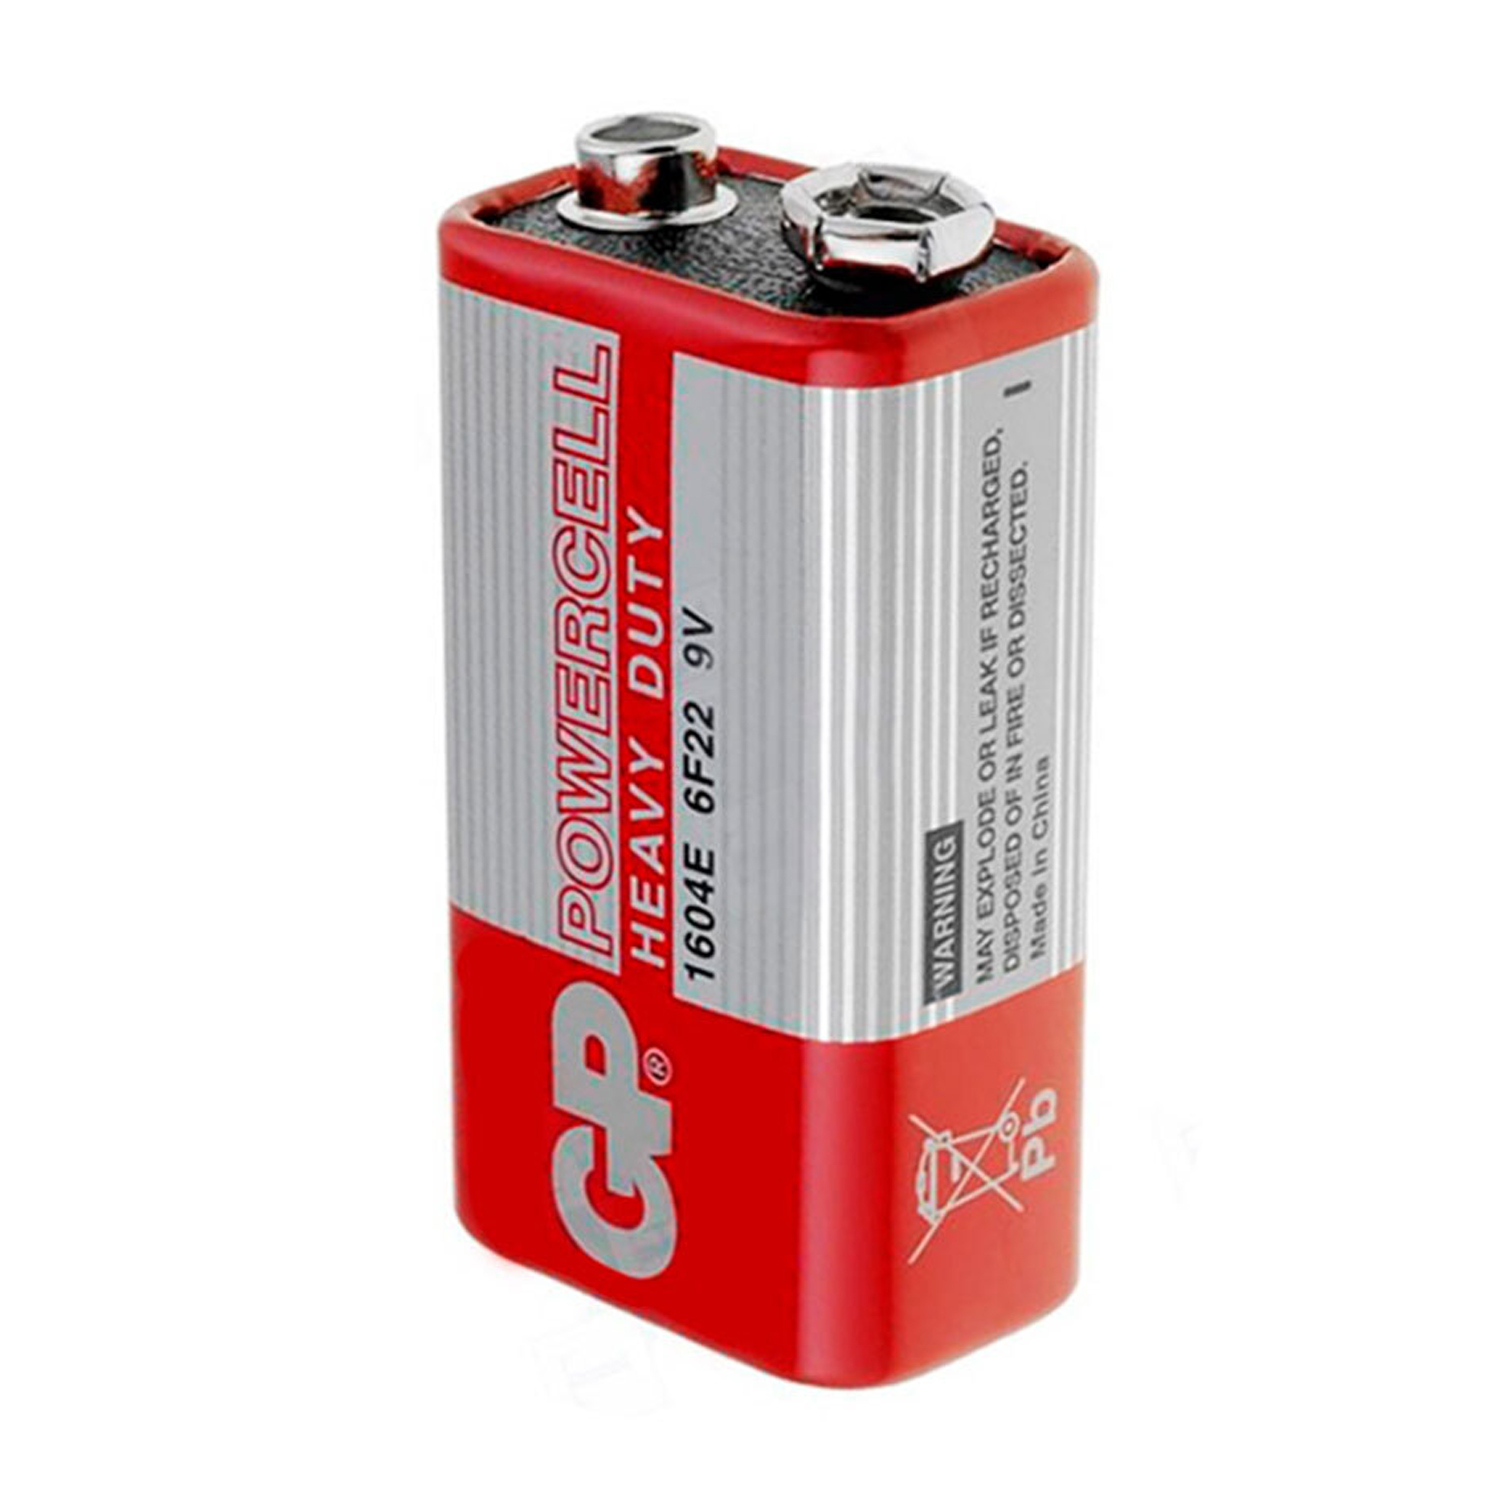 Батарейка крона GP Powercell 1604E-S1 6F22 9V, фото